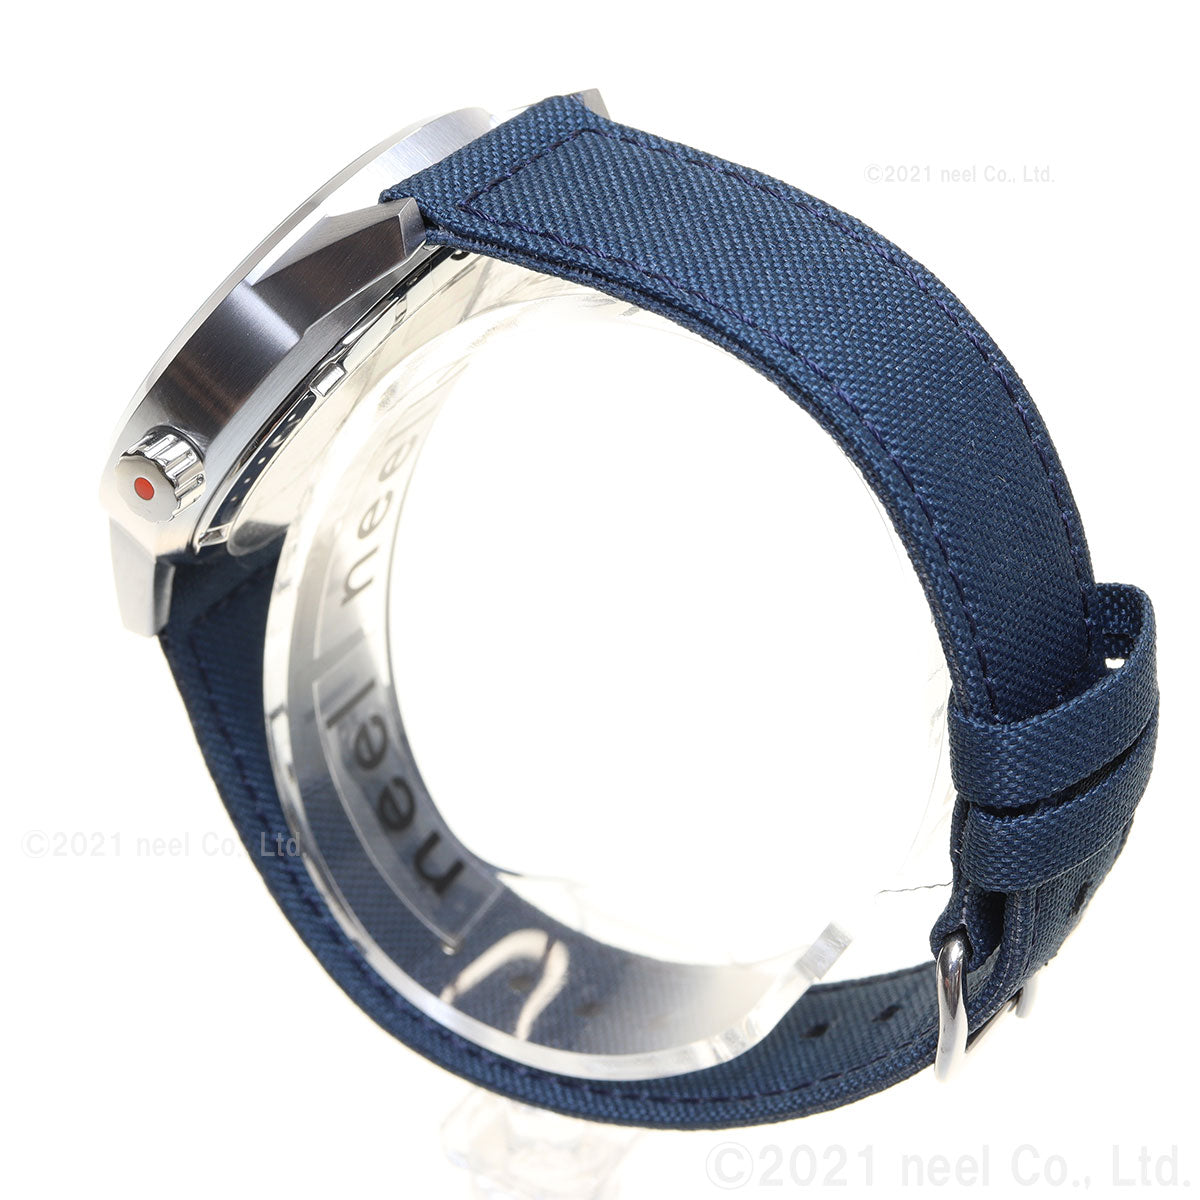 トリワ TRIWA HUMANIUM 39 HU39B-CL080712 腕時計 メンズ ヒューマニウム メタル ブルー